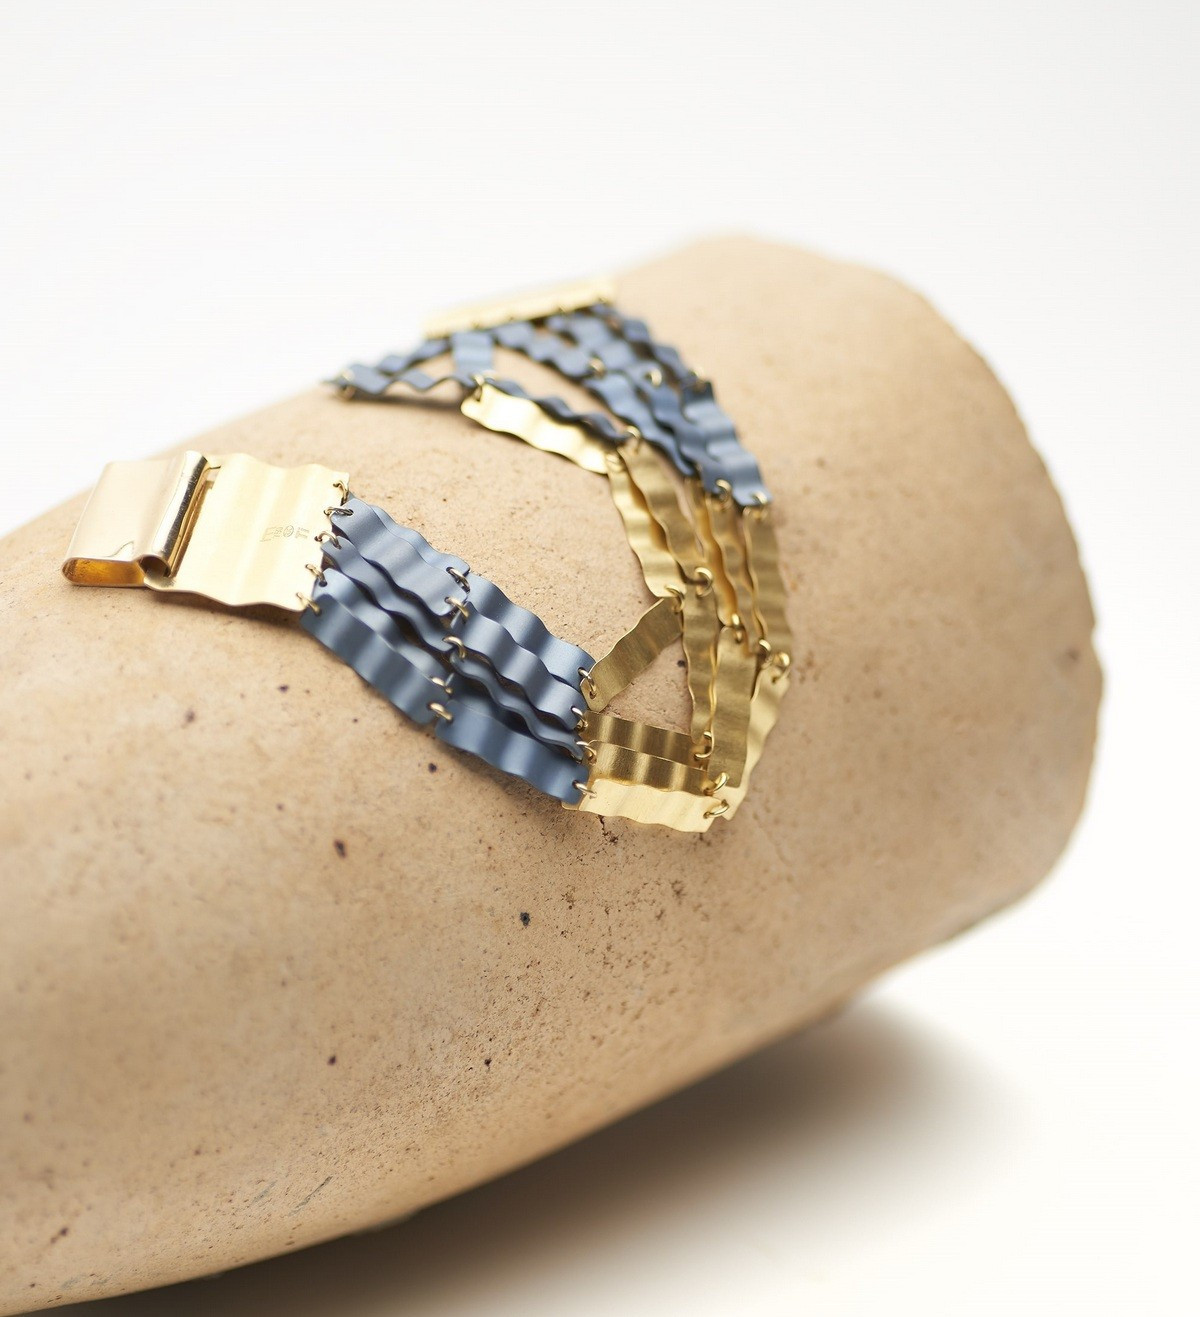 18k gold and titanium bracelet Aigua 3 bands 19cm